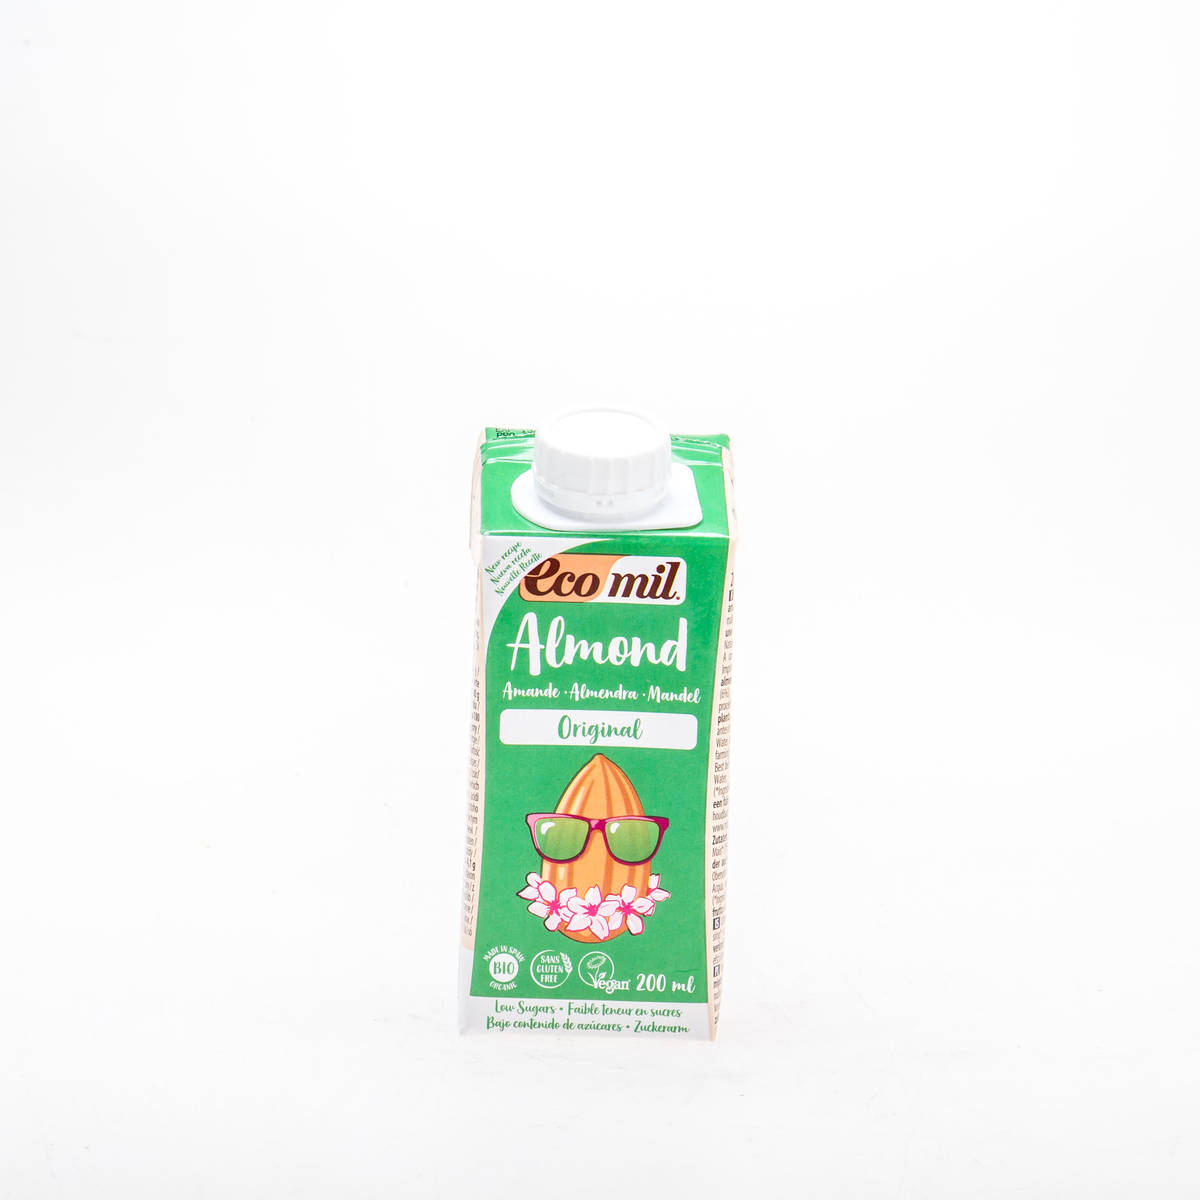 Органічне рослинне молоко з мигдалю з сиропом агави, 200 мл - купить в интернет-магазине Юнимед